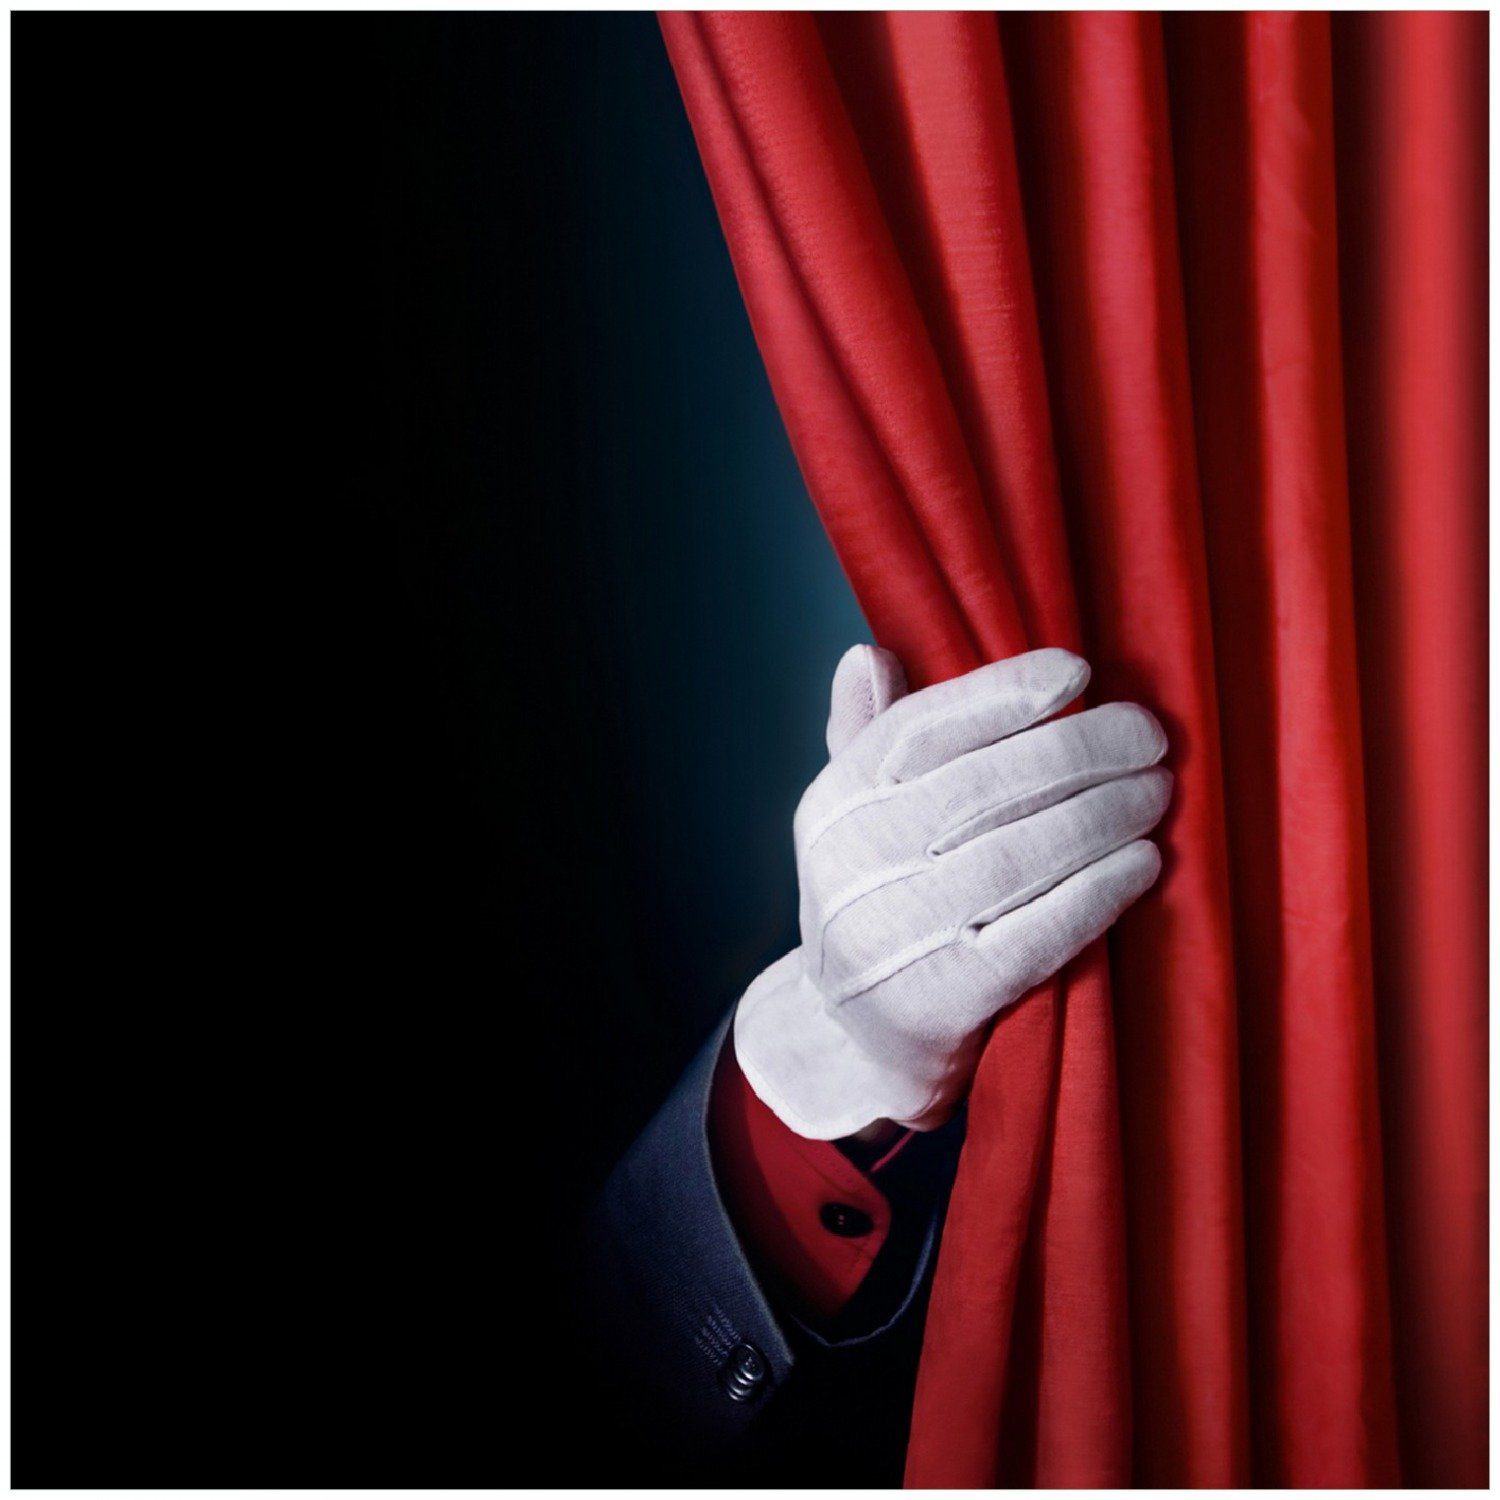 Wallario Memoboard Vorhang auf für die Show Hand hinterm roten Vorhang